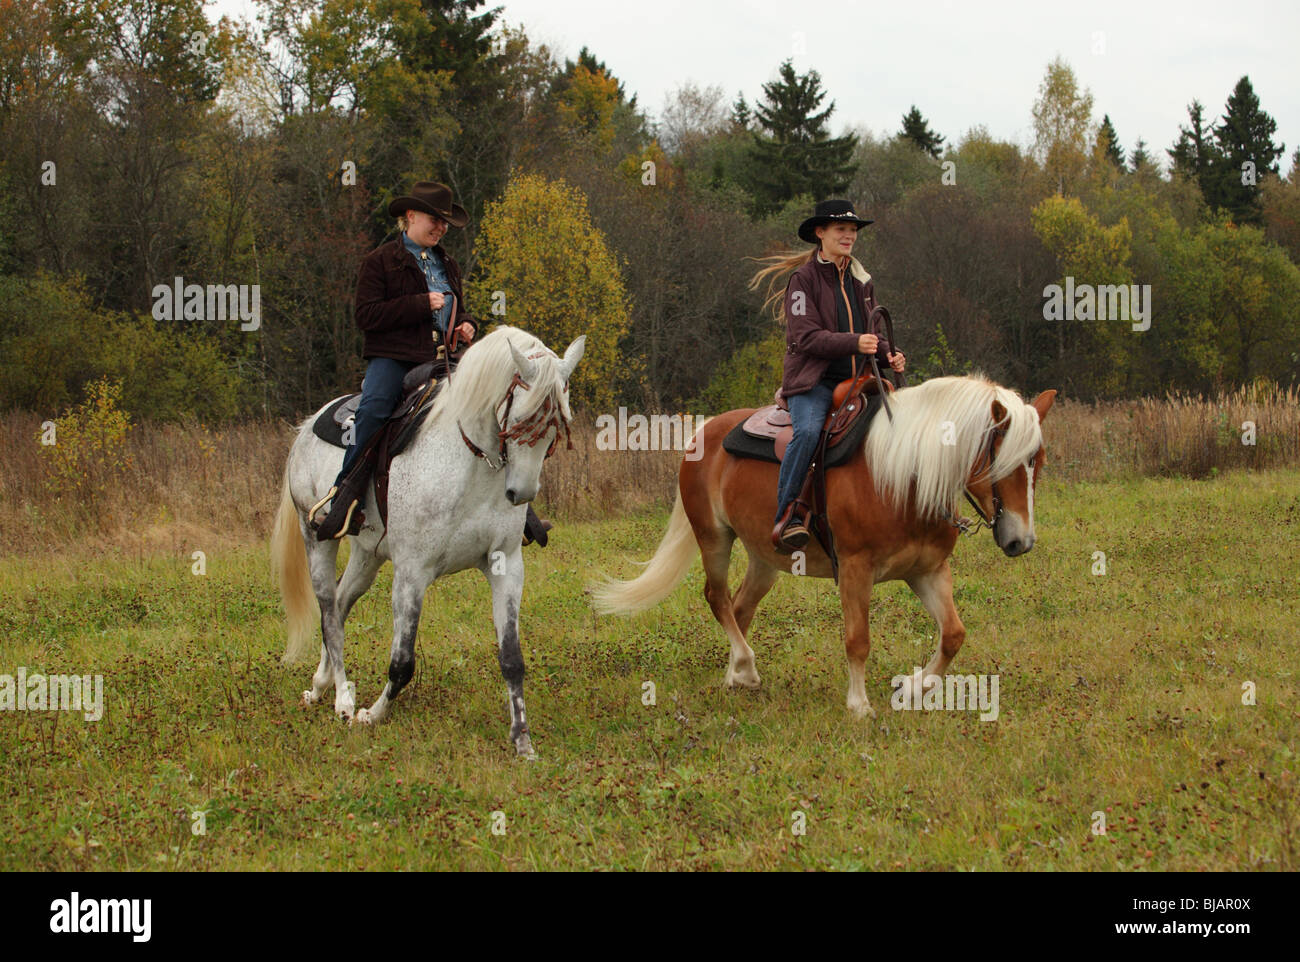 Deux femmes vêtues de vêtements et les chapeaux de cowboy de l'équitation western à cheval dans un ranch Banque D'Images